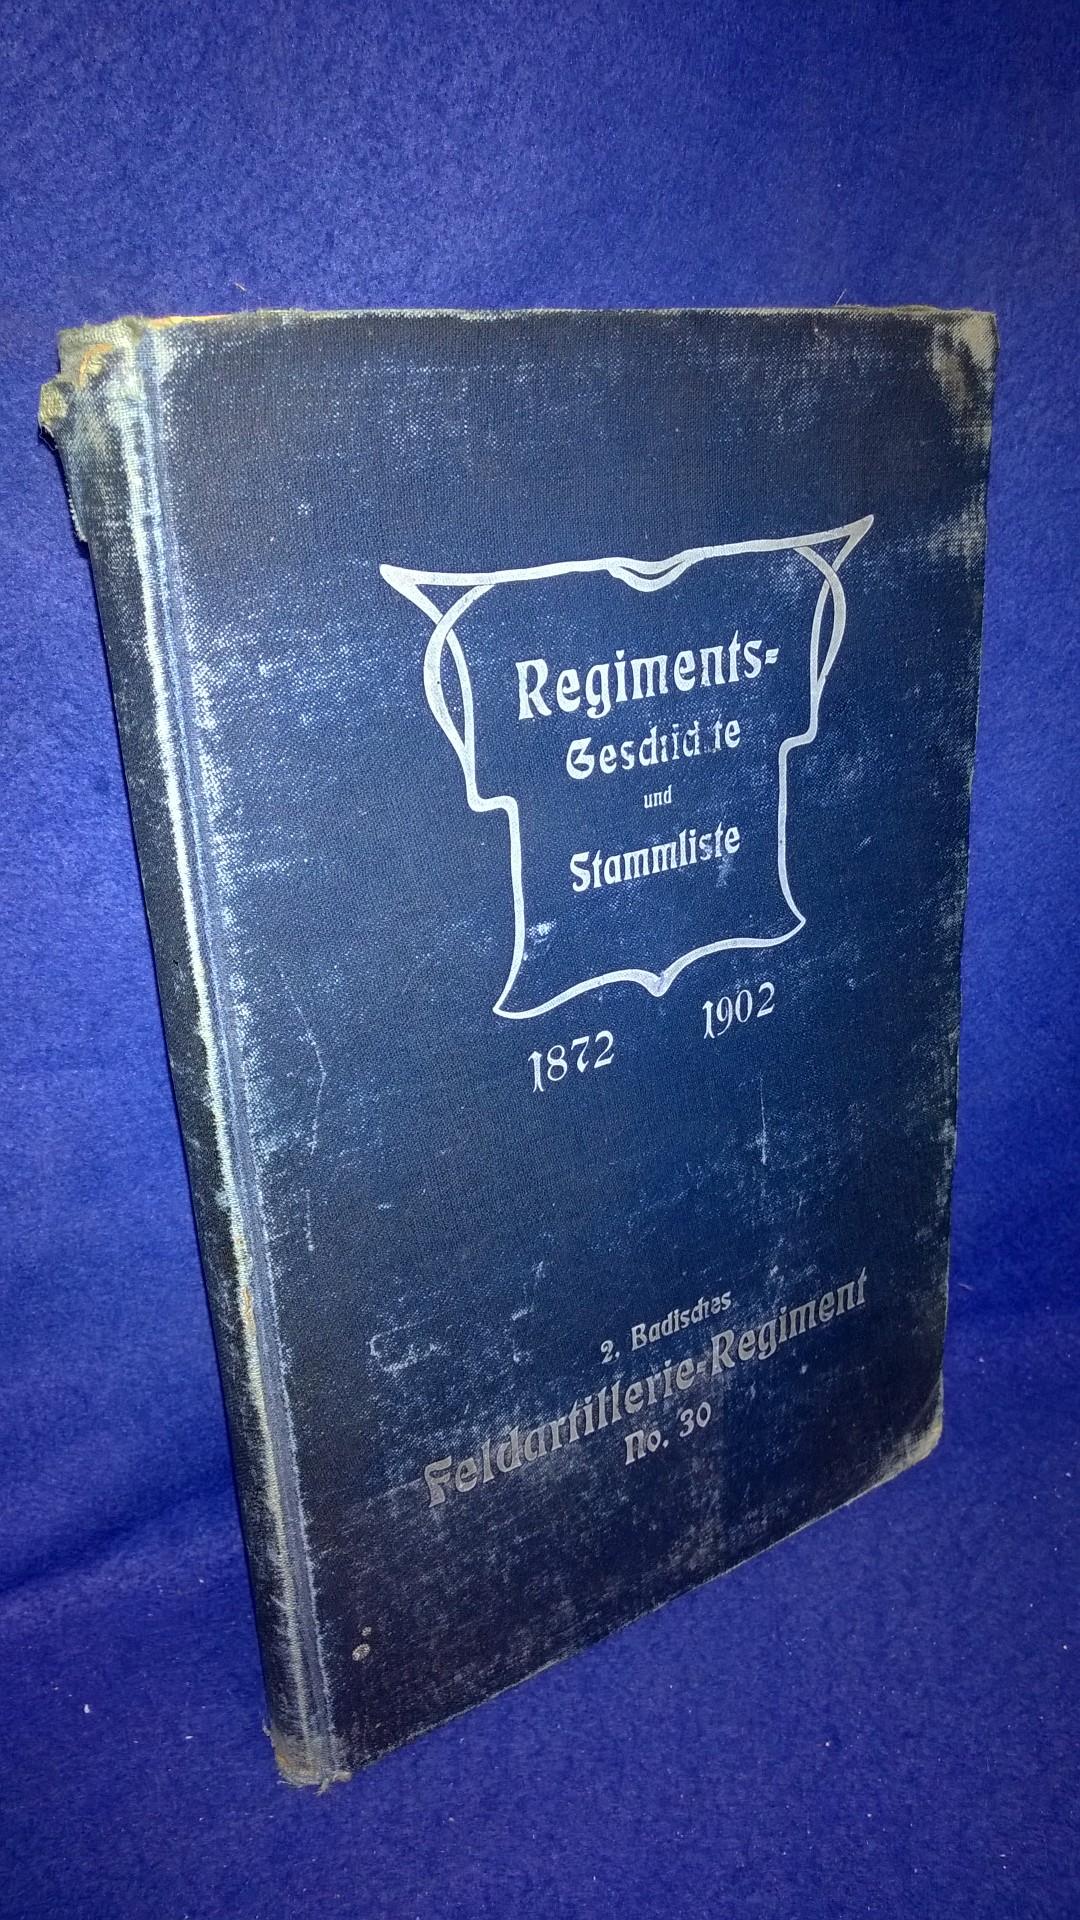 Regiments-Geschichte und Stammliste 1872-1902 des 2.Badischen Feldartillerie-Regiment No.30.